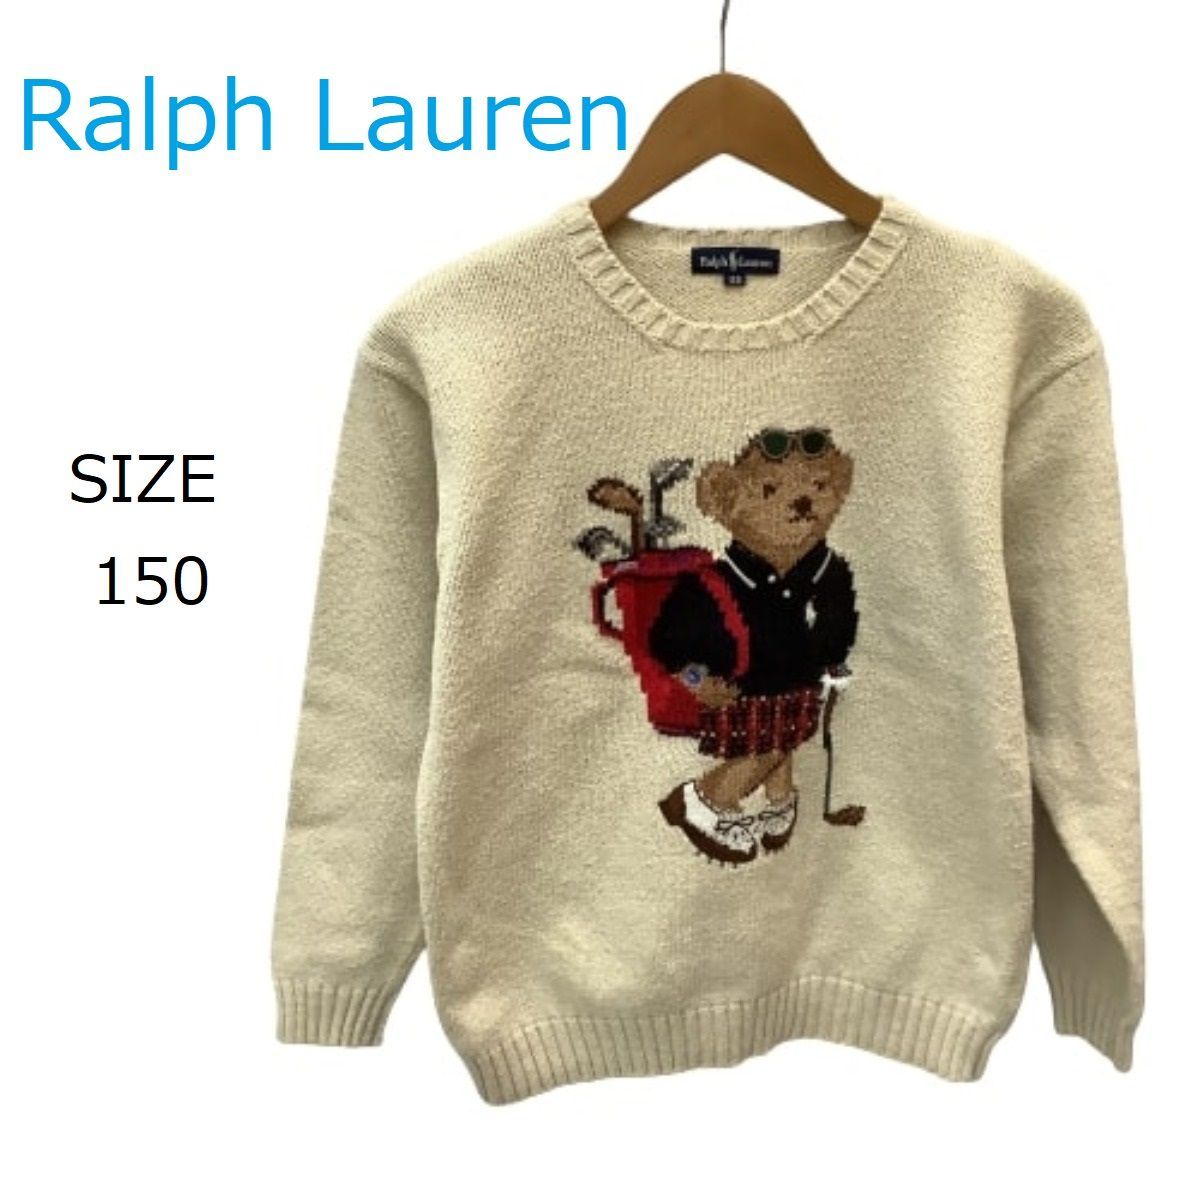 Ralph Lauren ラルフローレン キッズ セーター SIZE 150 - www.port